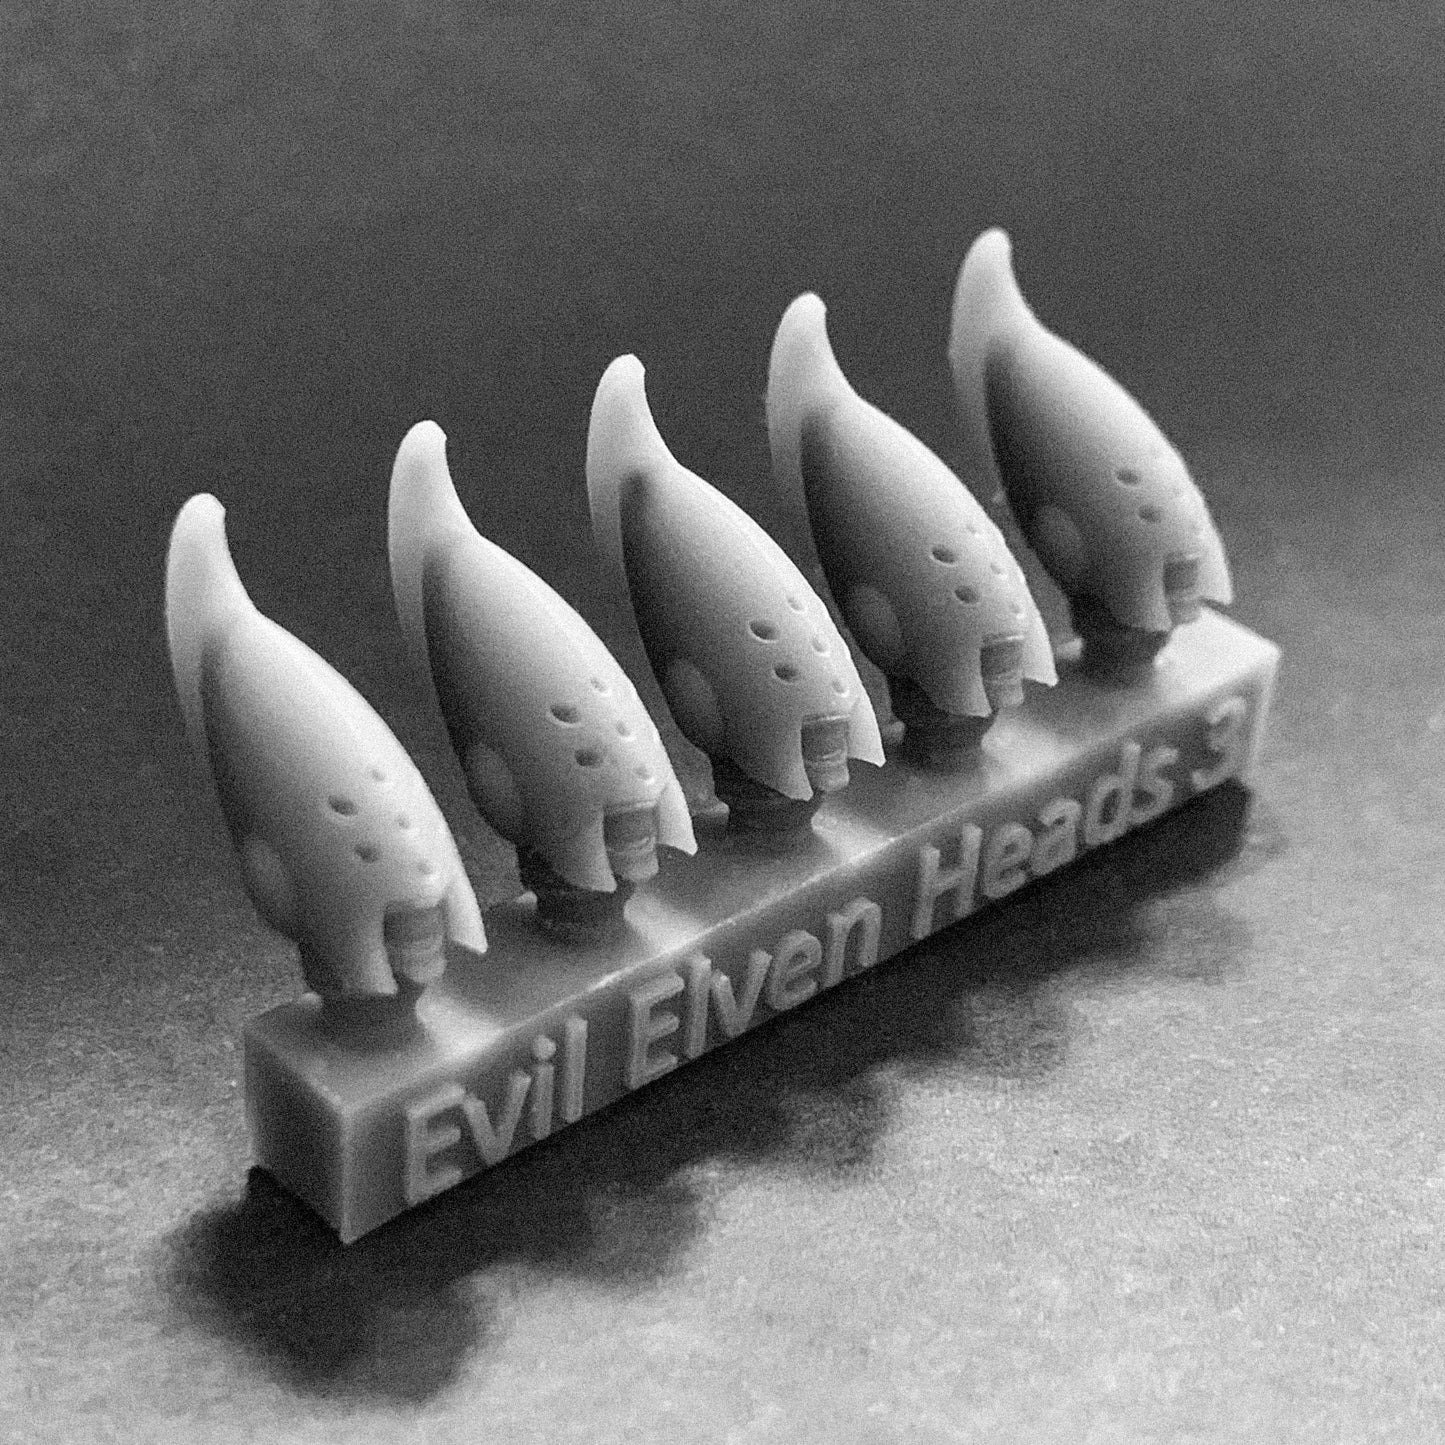 Evil Elven Heads 3 STL File Download